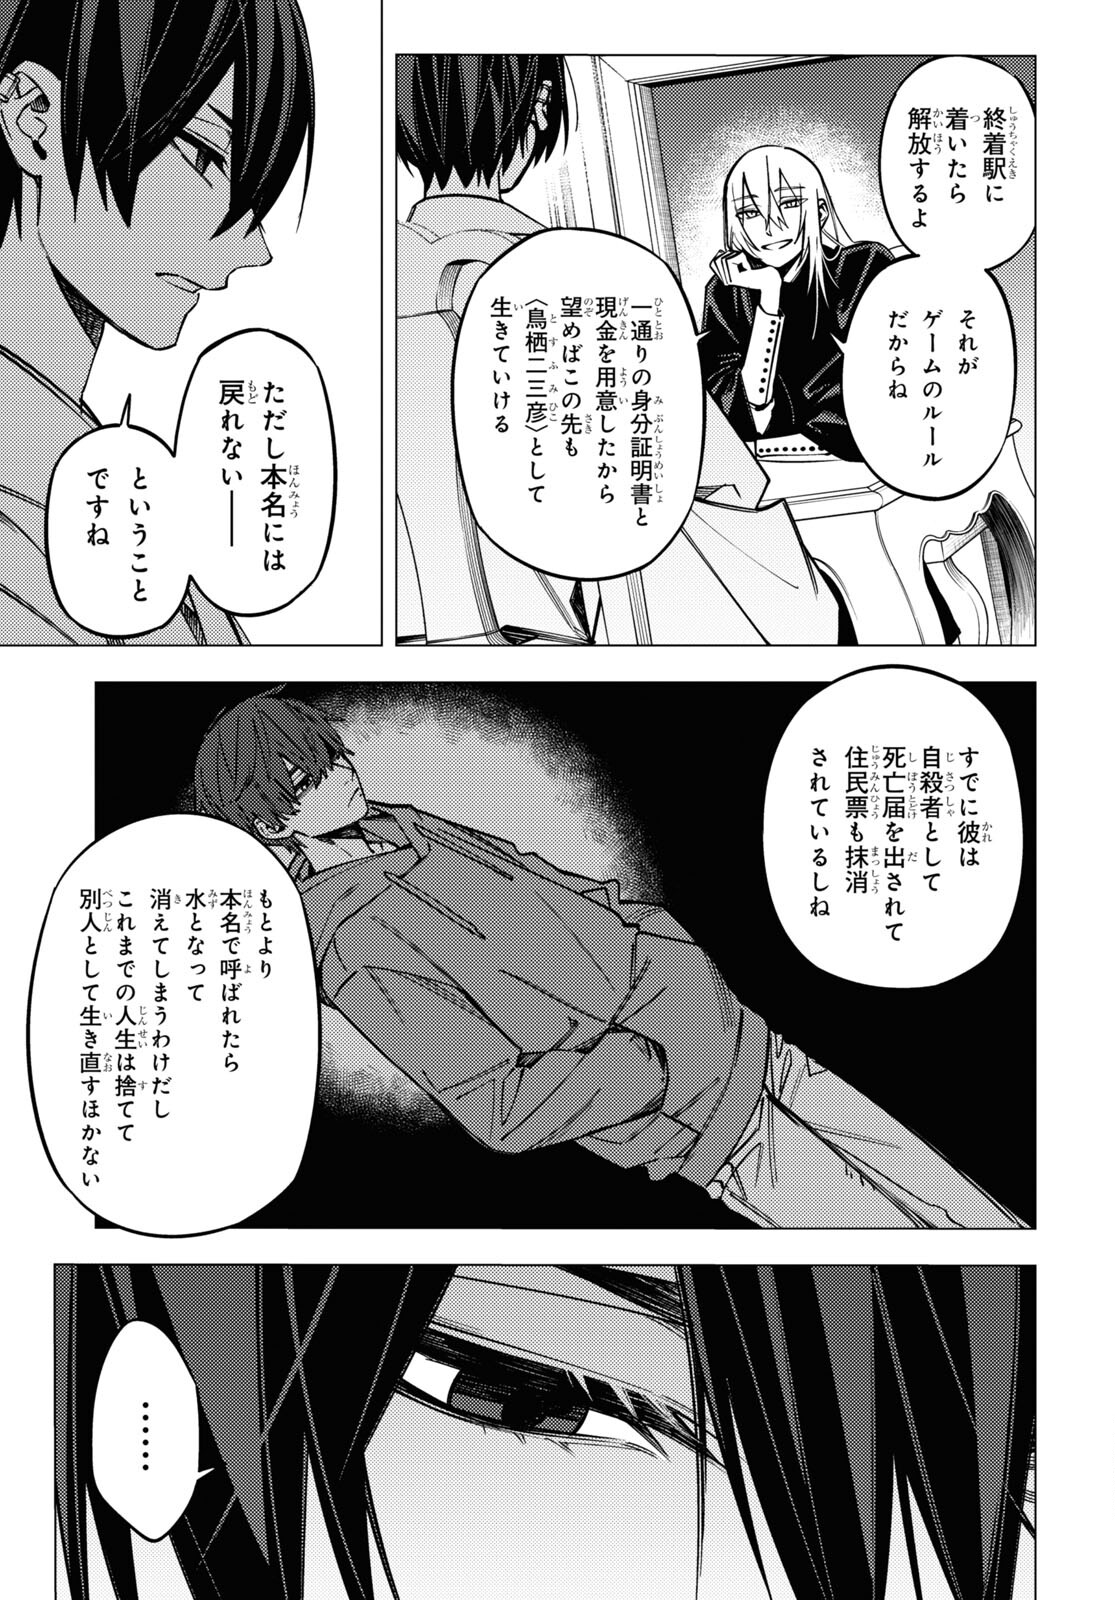 Jigoku Kurayami Hana mo naki - Chapter 46 - Page 3